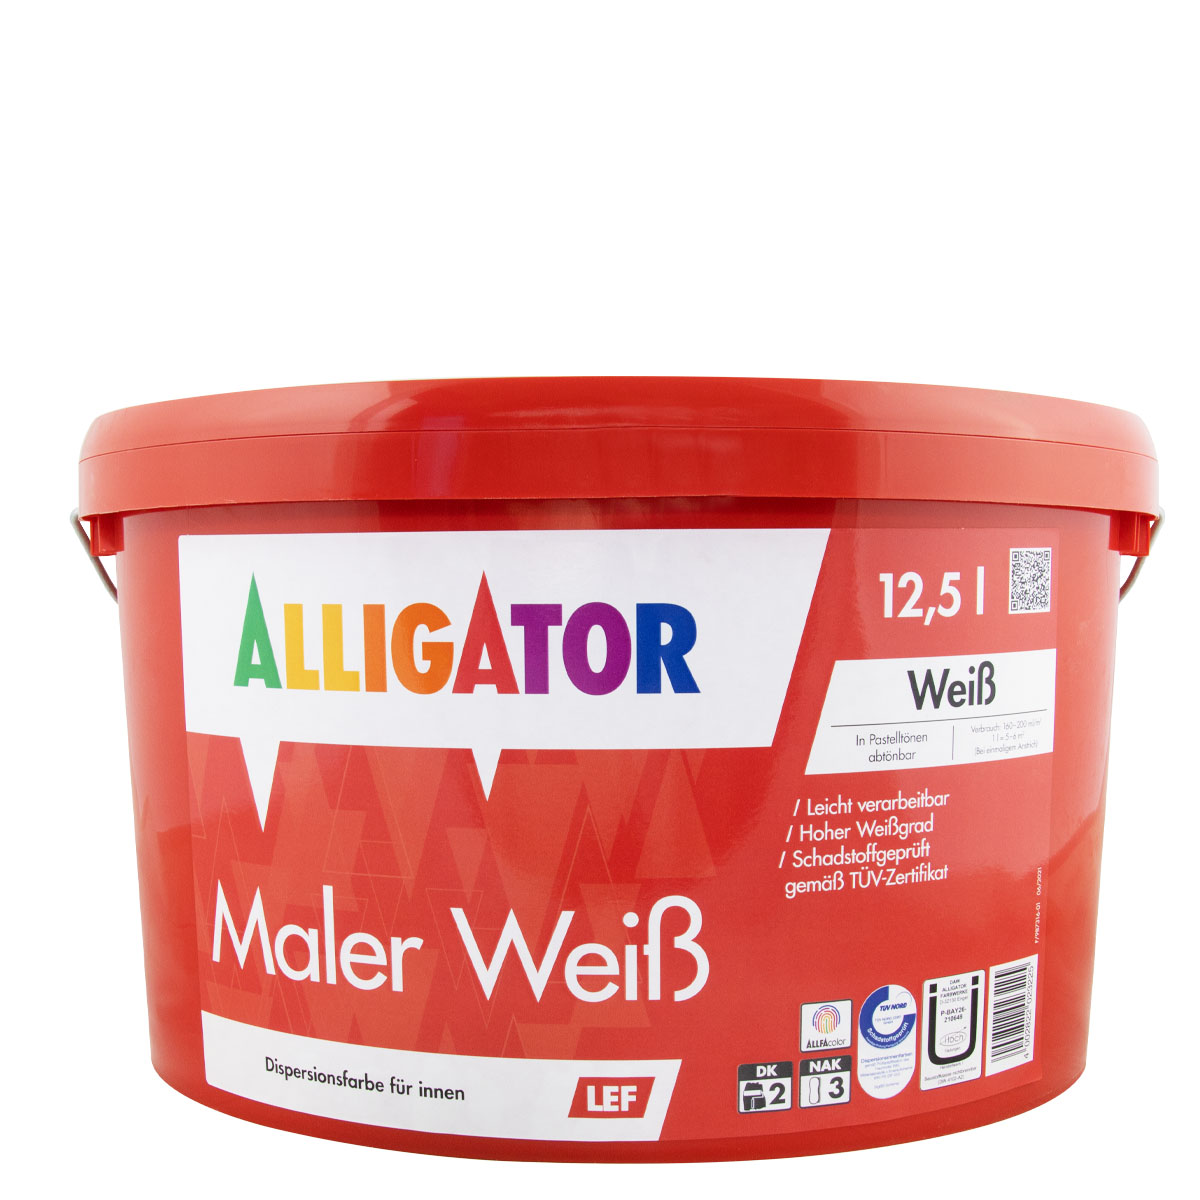 alligator_maler-weiss_12,5L_gross